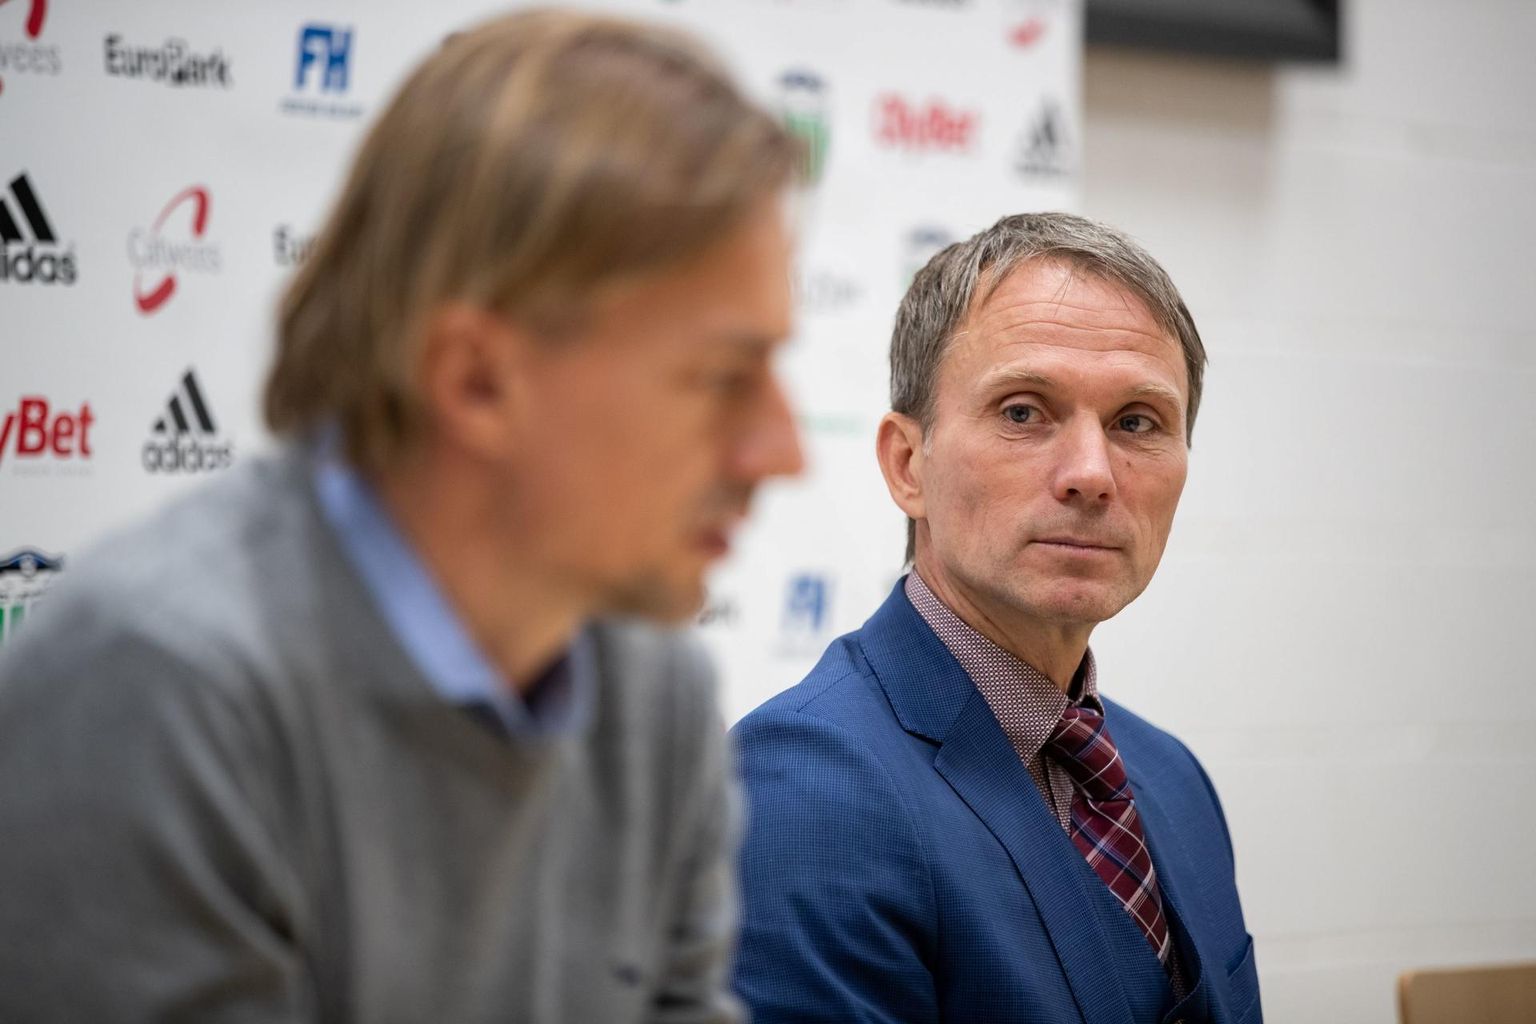 Vahetult pärast seda, kui Martin Reim (paremal) mängijakarjääri lõpetas, tõusis Sergei Pareiko Eesti koondise esiväravavahiks. Nüüd hakatakse Levadias ühist asja ajama. FOTO: Eero Vabamägi